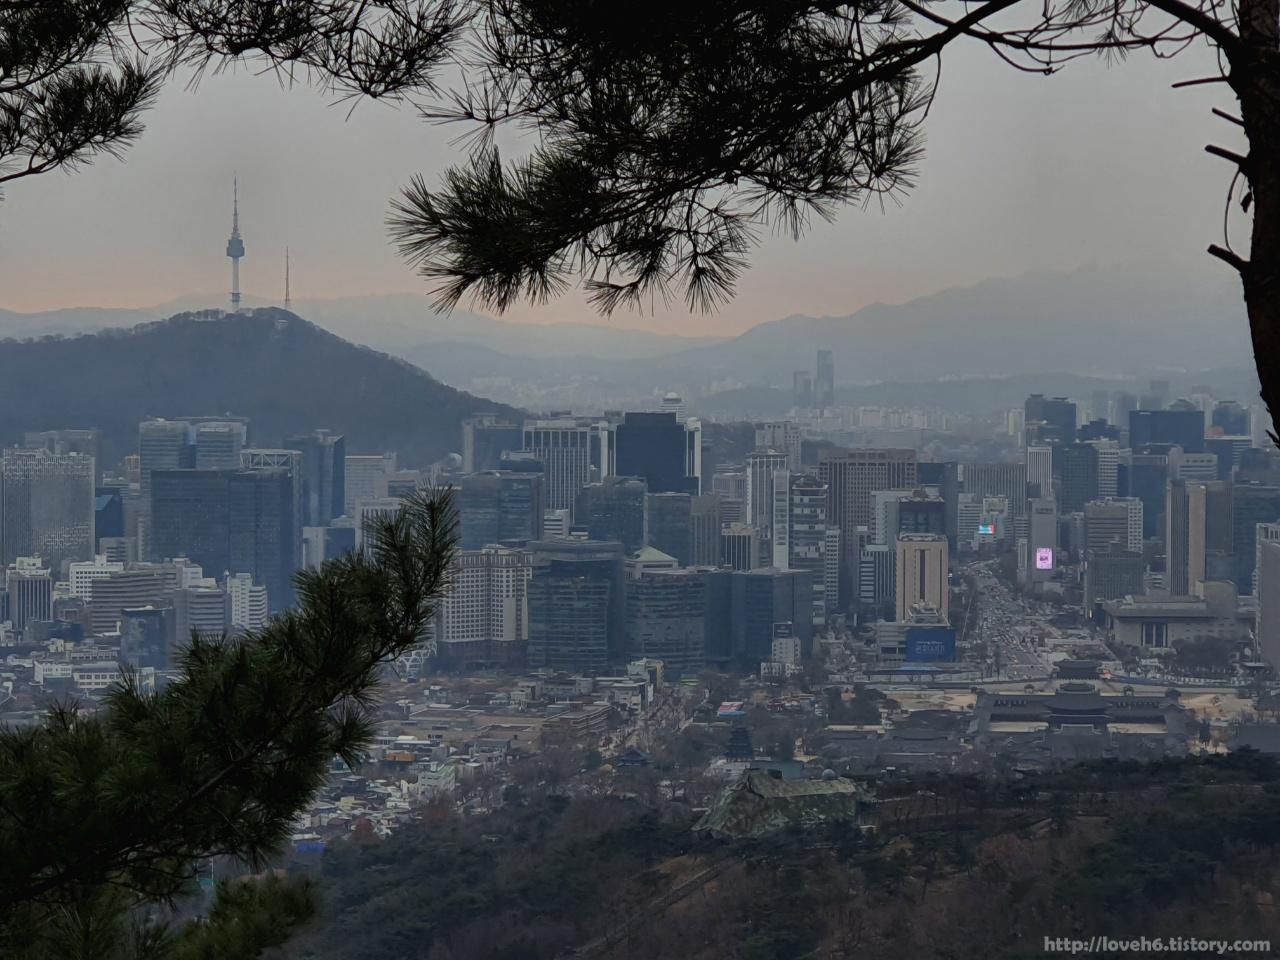 북악산_北岳山_Bukaksan/북악 촛대 바위쪽에서도

서울의 모습을 바라볼 수 있어서

잠시 휴식하면서 감상해보았습니다